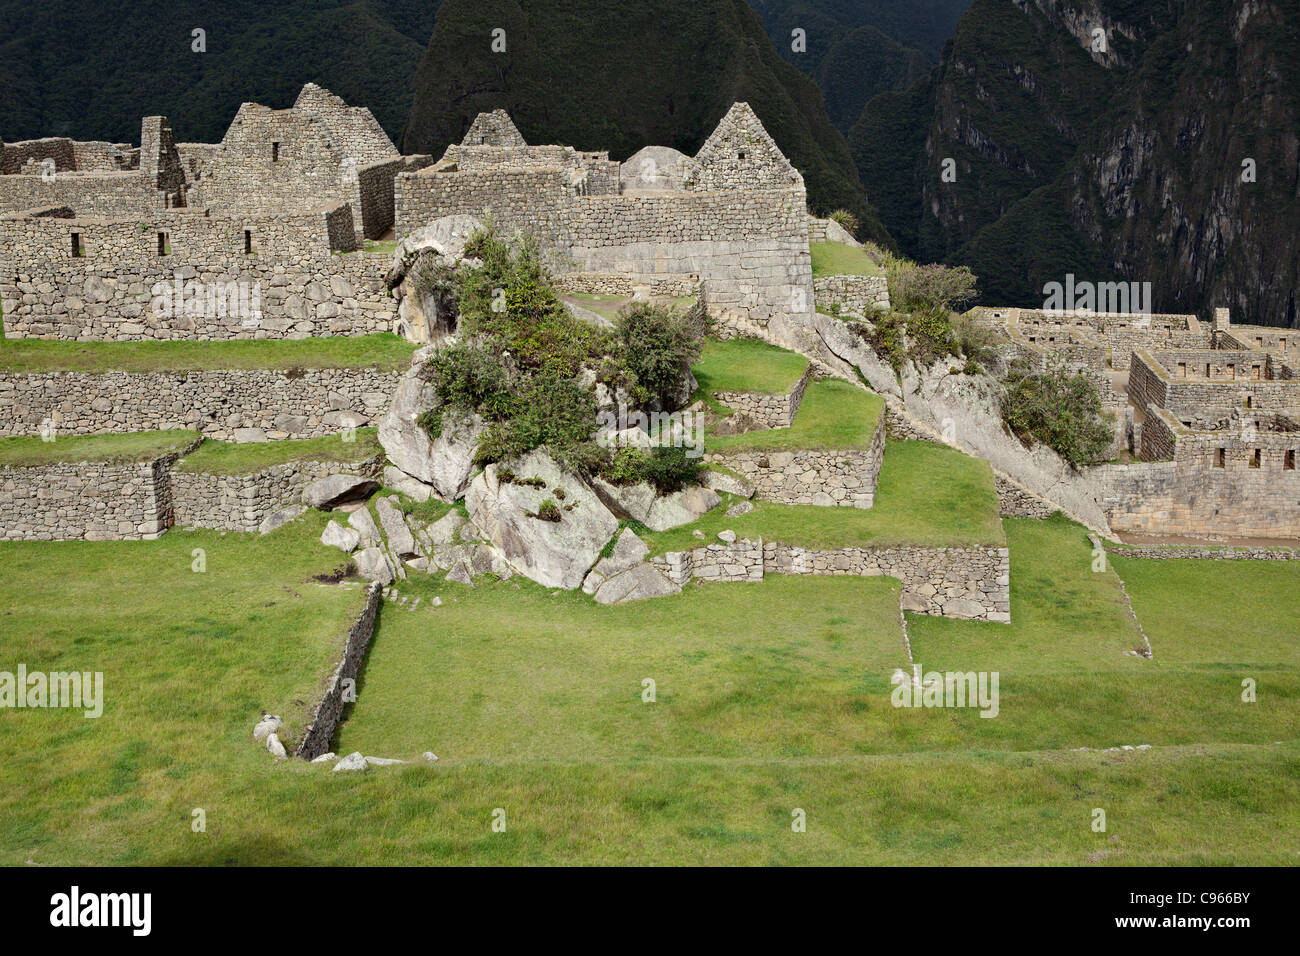 Alten Inka-Ruinen von Machu Picchu, die bekannteste Sehenswürdigkeit in Anden, Peru. Stockfoto